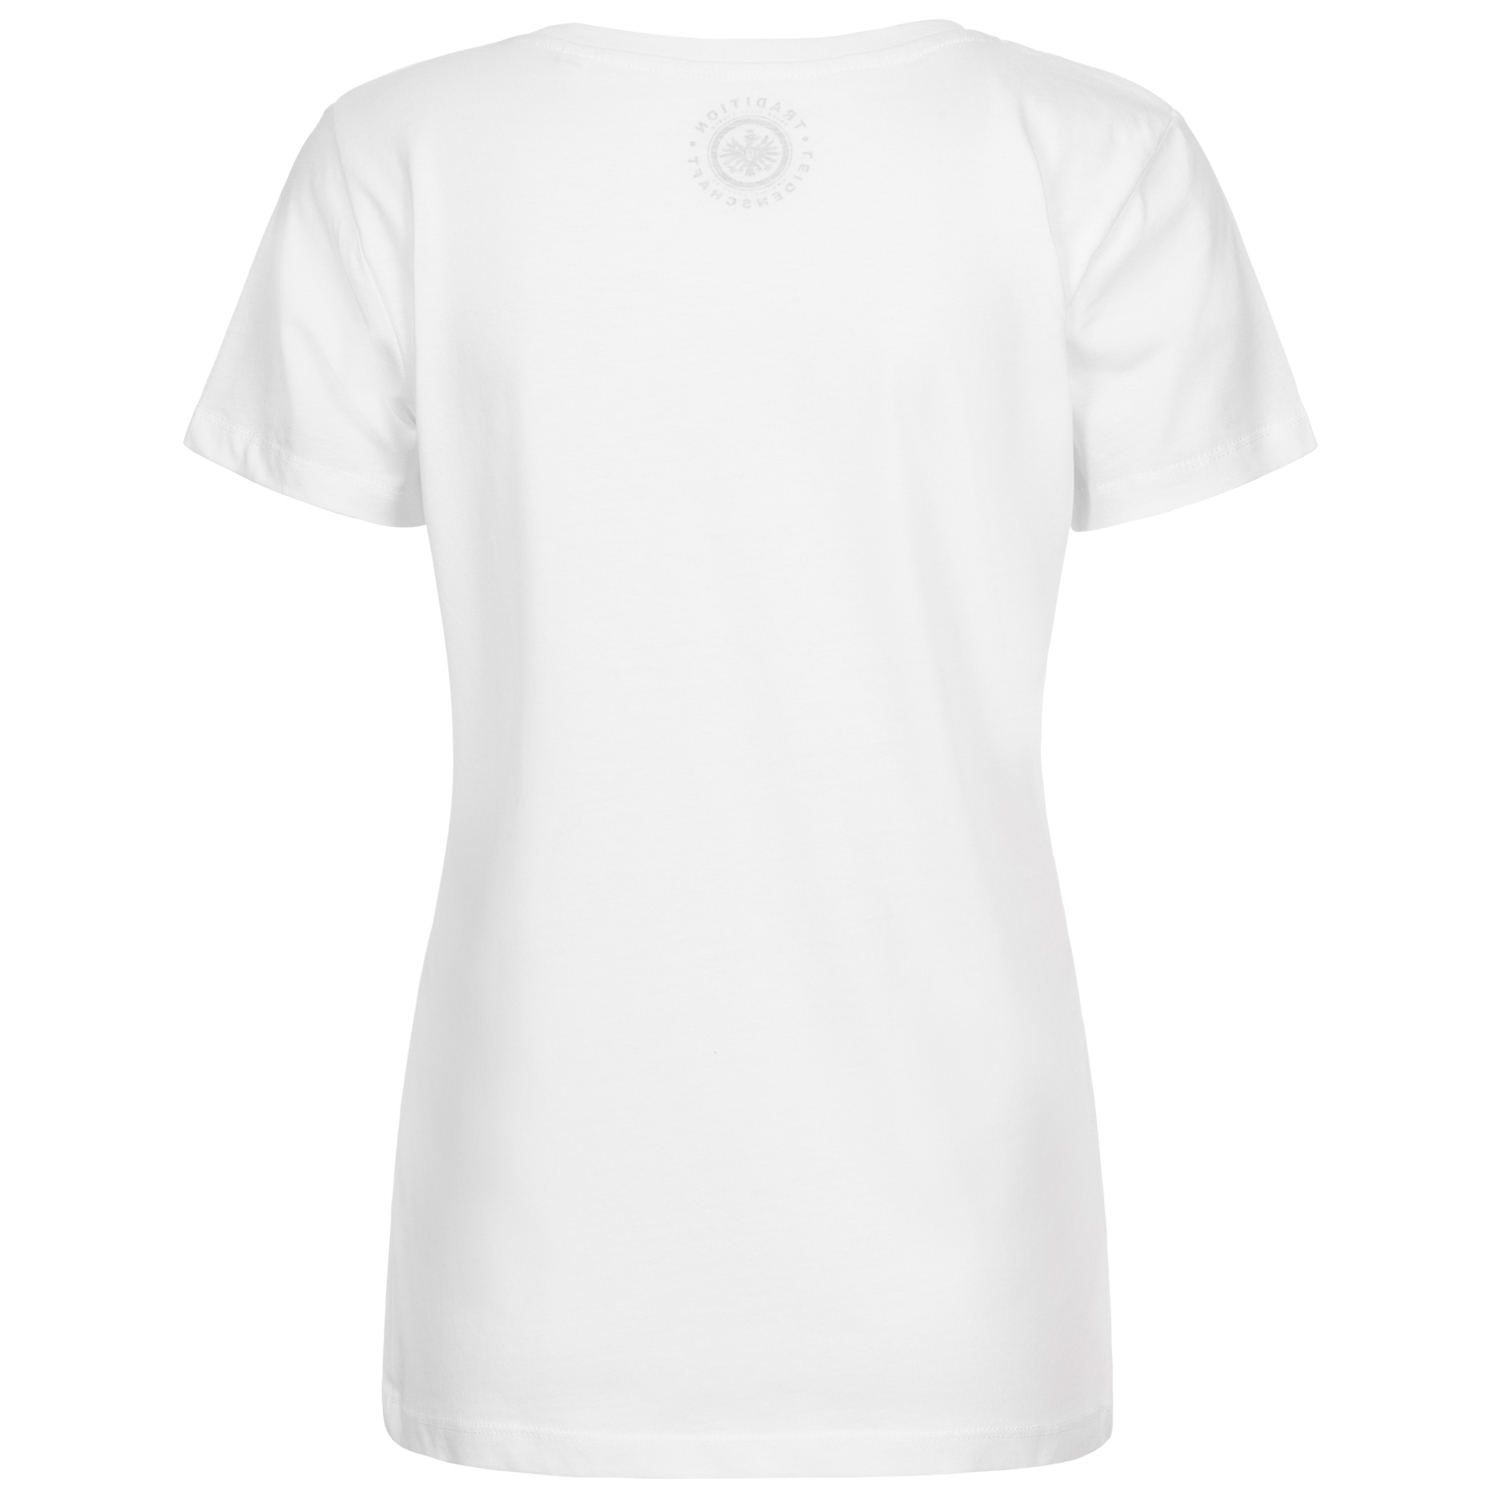 Bild 2: Damen T-Shirt SGE weiß